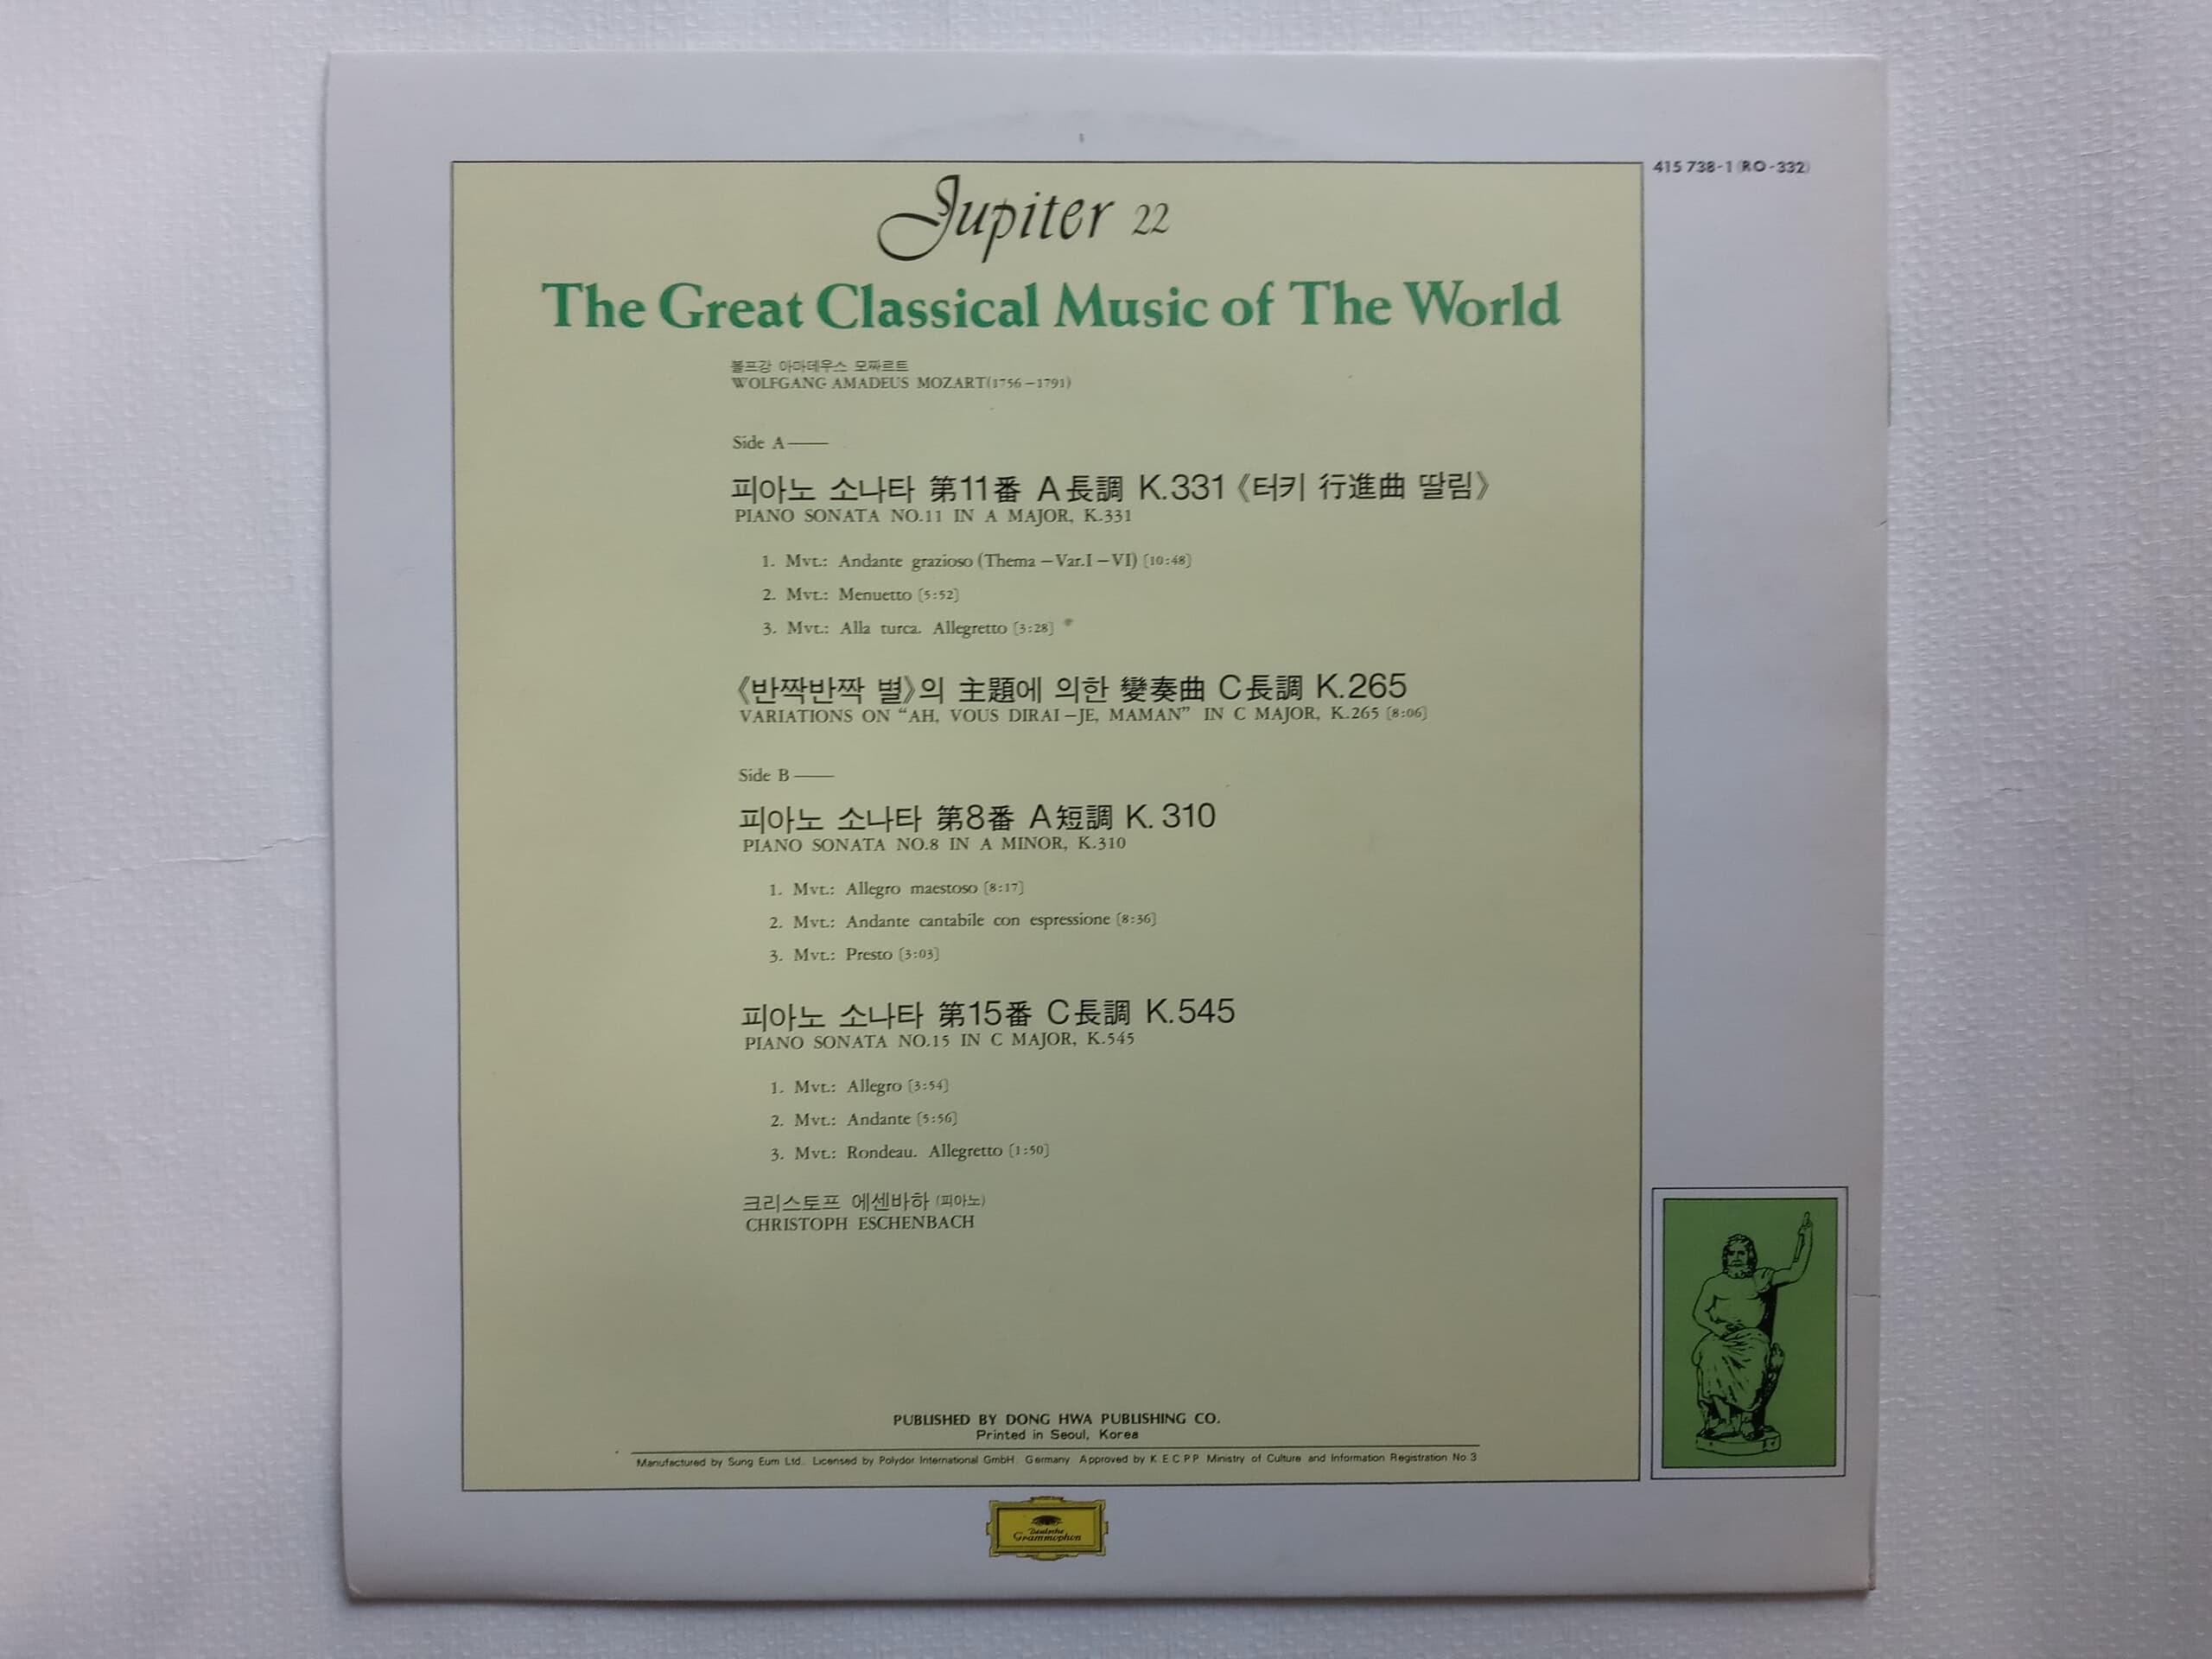 LP(엘피 레코드) 모짜르트: 피아노 소나타 8번, 11번, 15번, 작은별 변주곡 - 크리스토프 에센바하